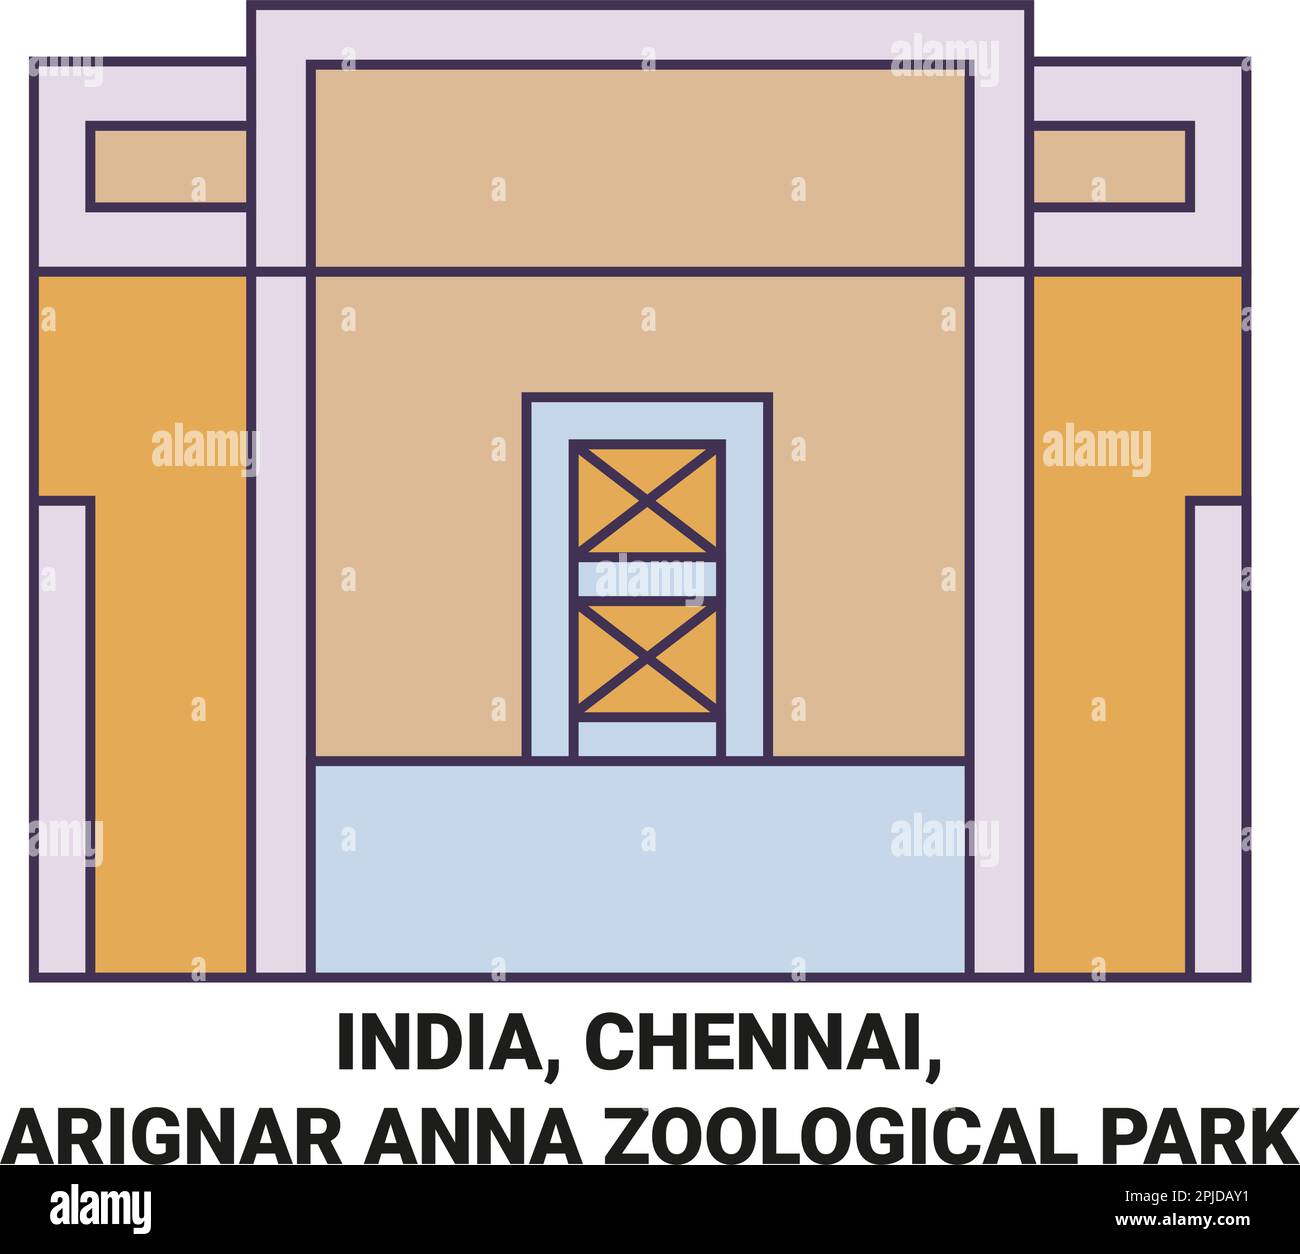 India, Chennai, Arignar Anna Zoological Park travel landmark vector illustration Stock Vector